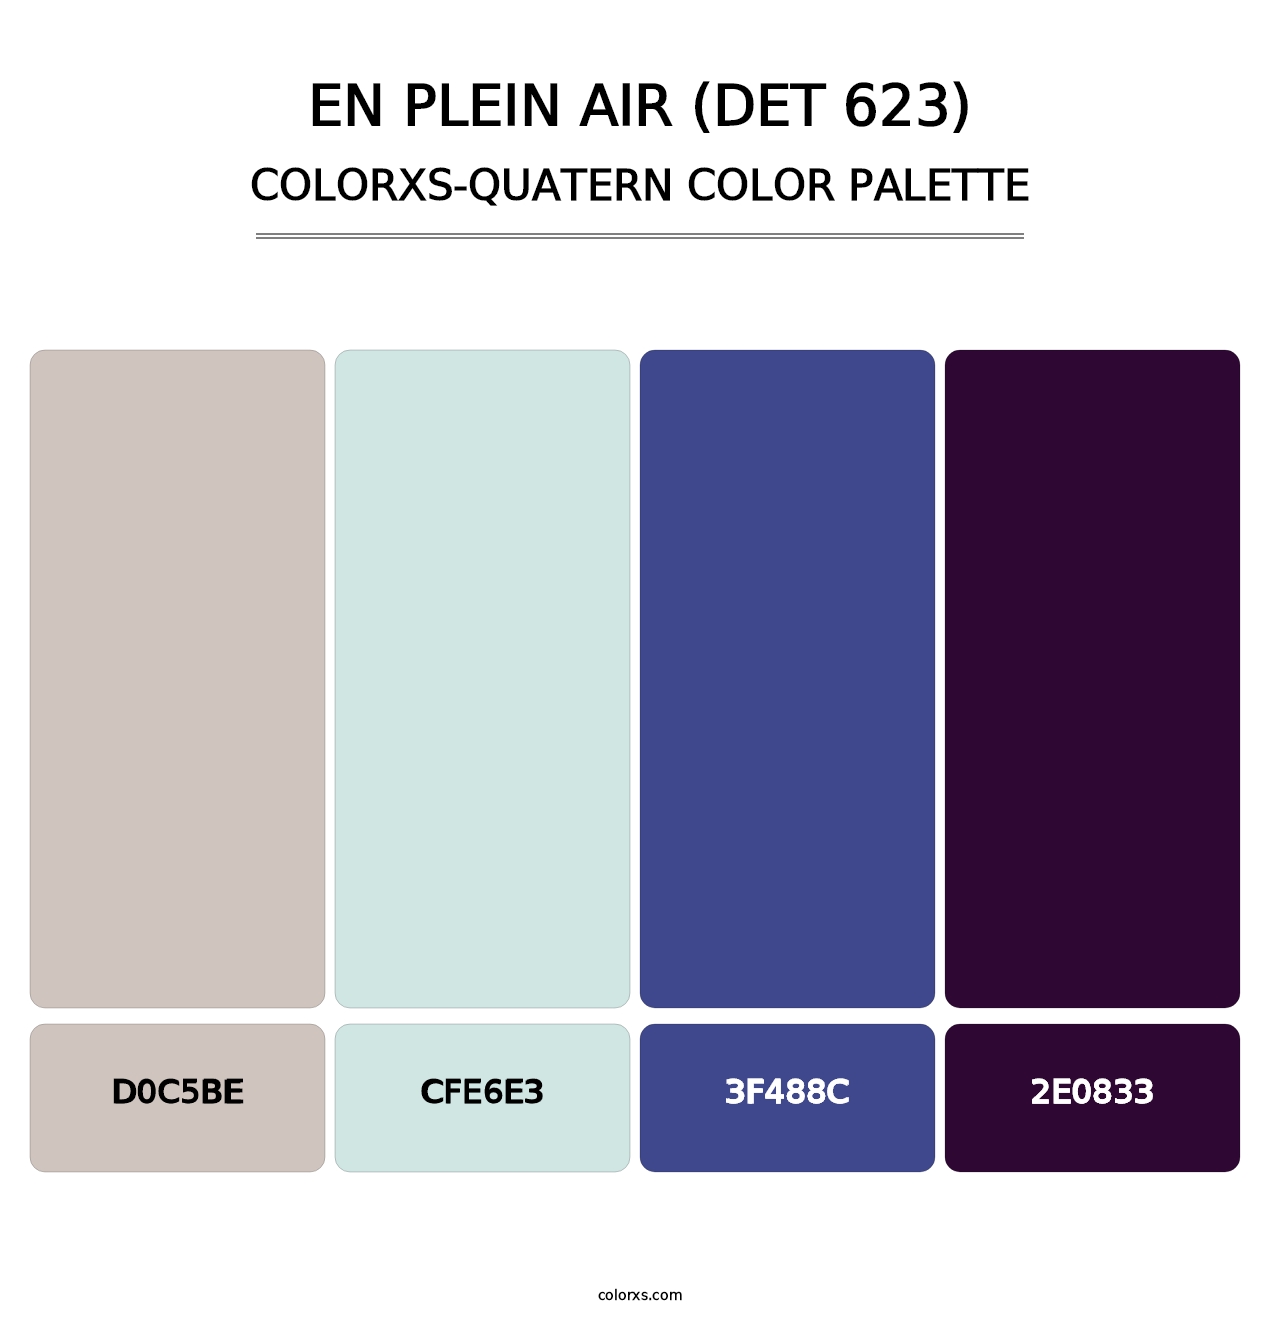 En Plein Air (DET 623) - Colorxs Quatern Palette